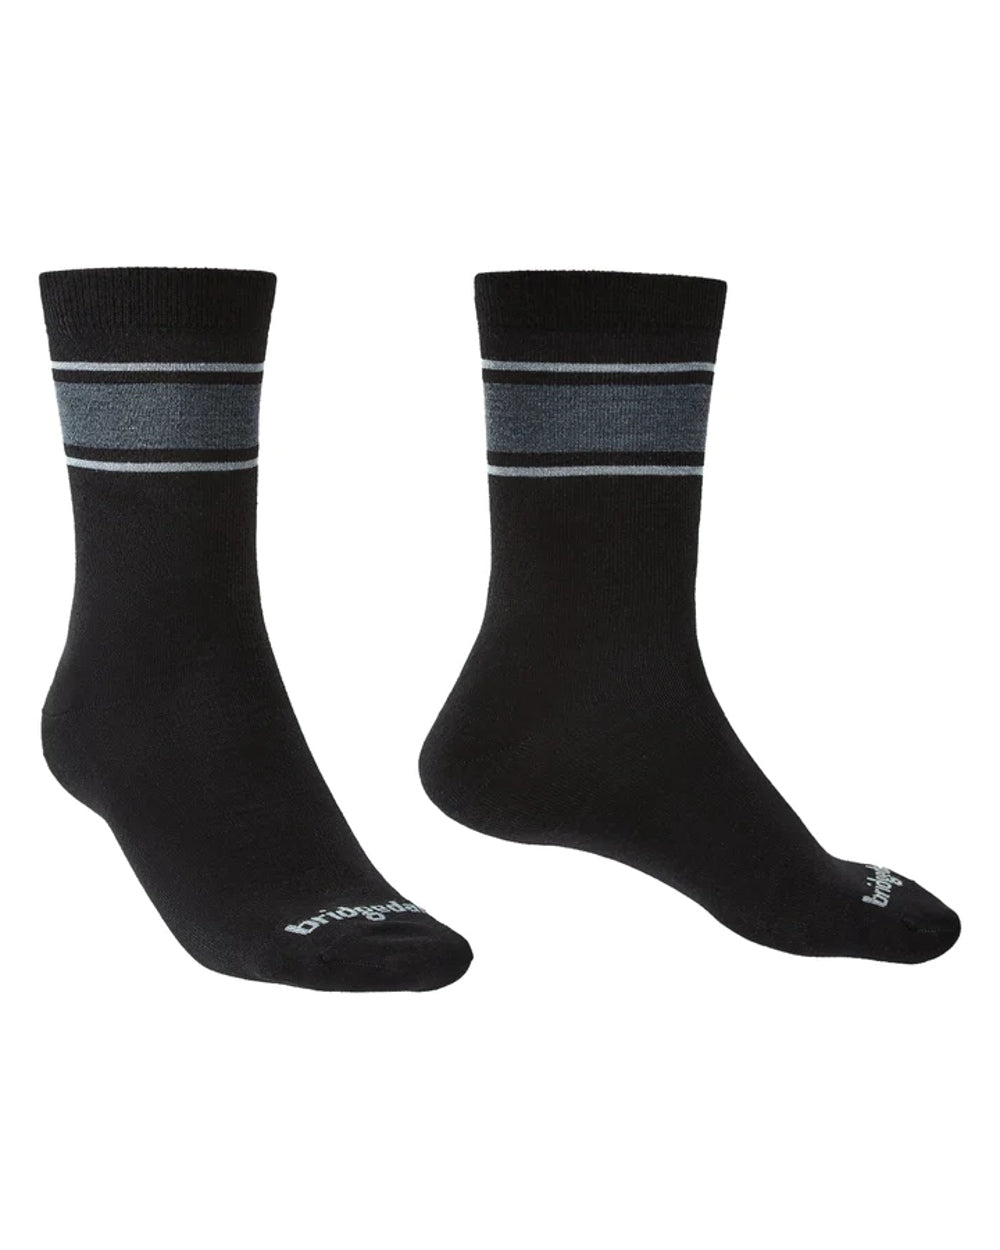 Black/Light Grey coloured Bridgedale Ultra Light Merino Performance Socks on white background 